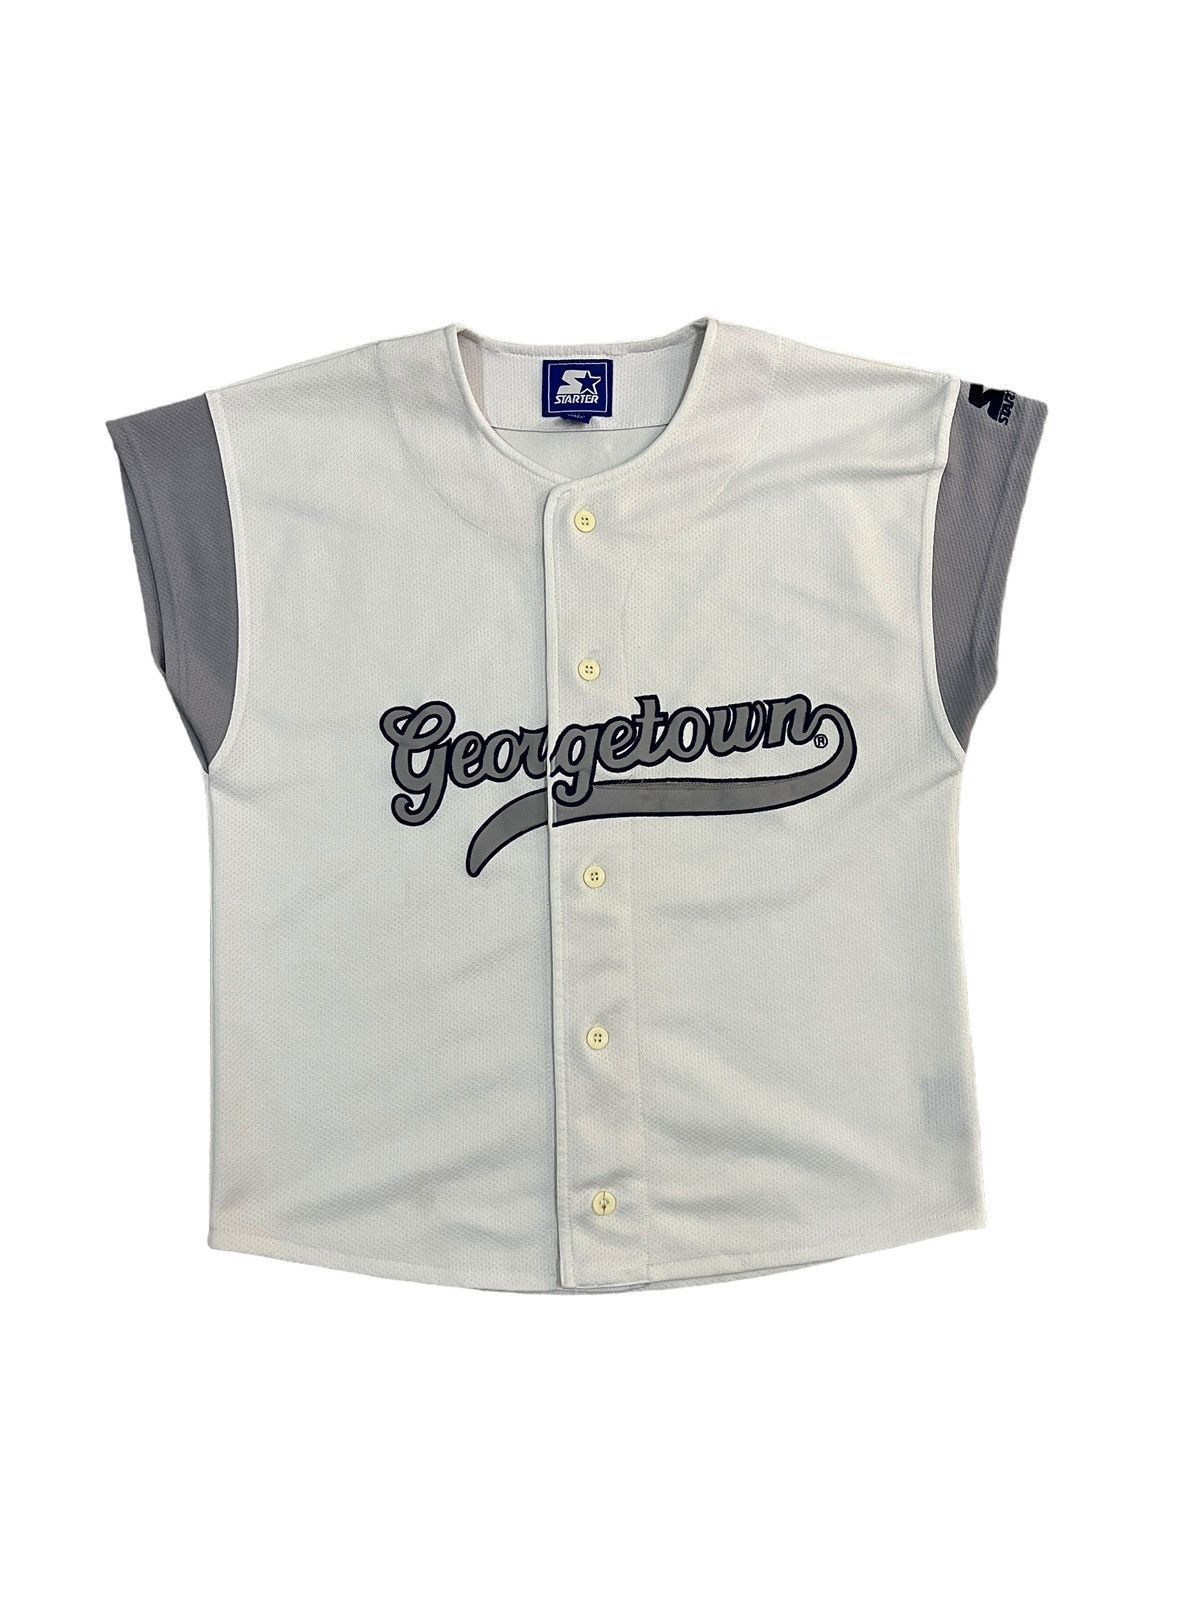 Vintage Starter Georgetown Hoyas Baseball Jersey - 1